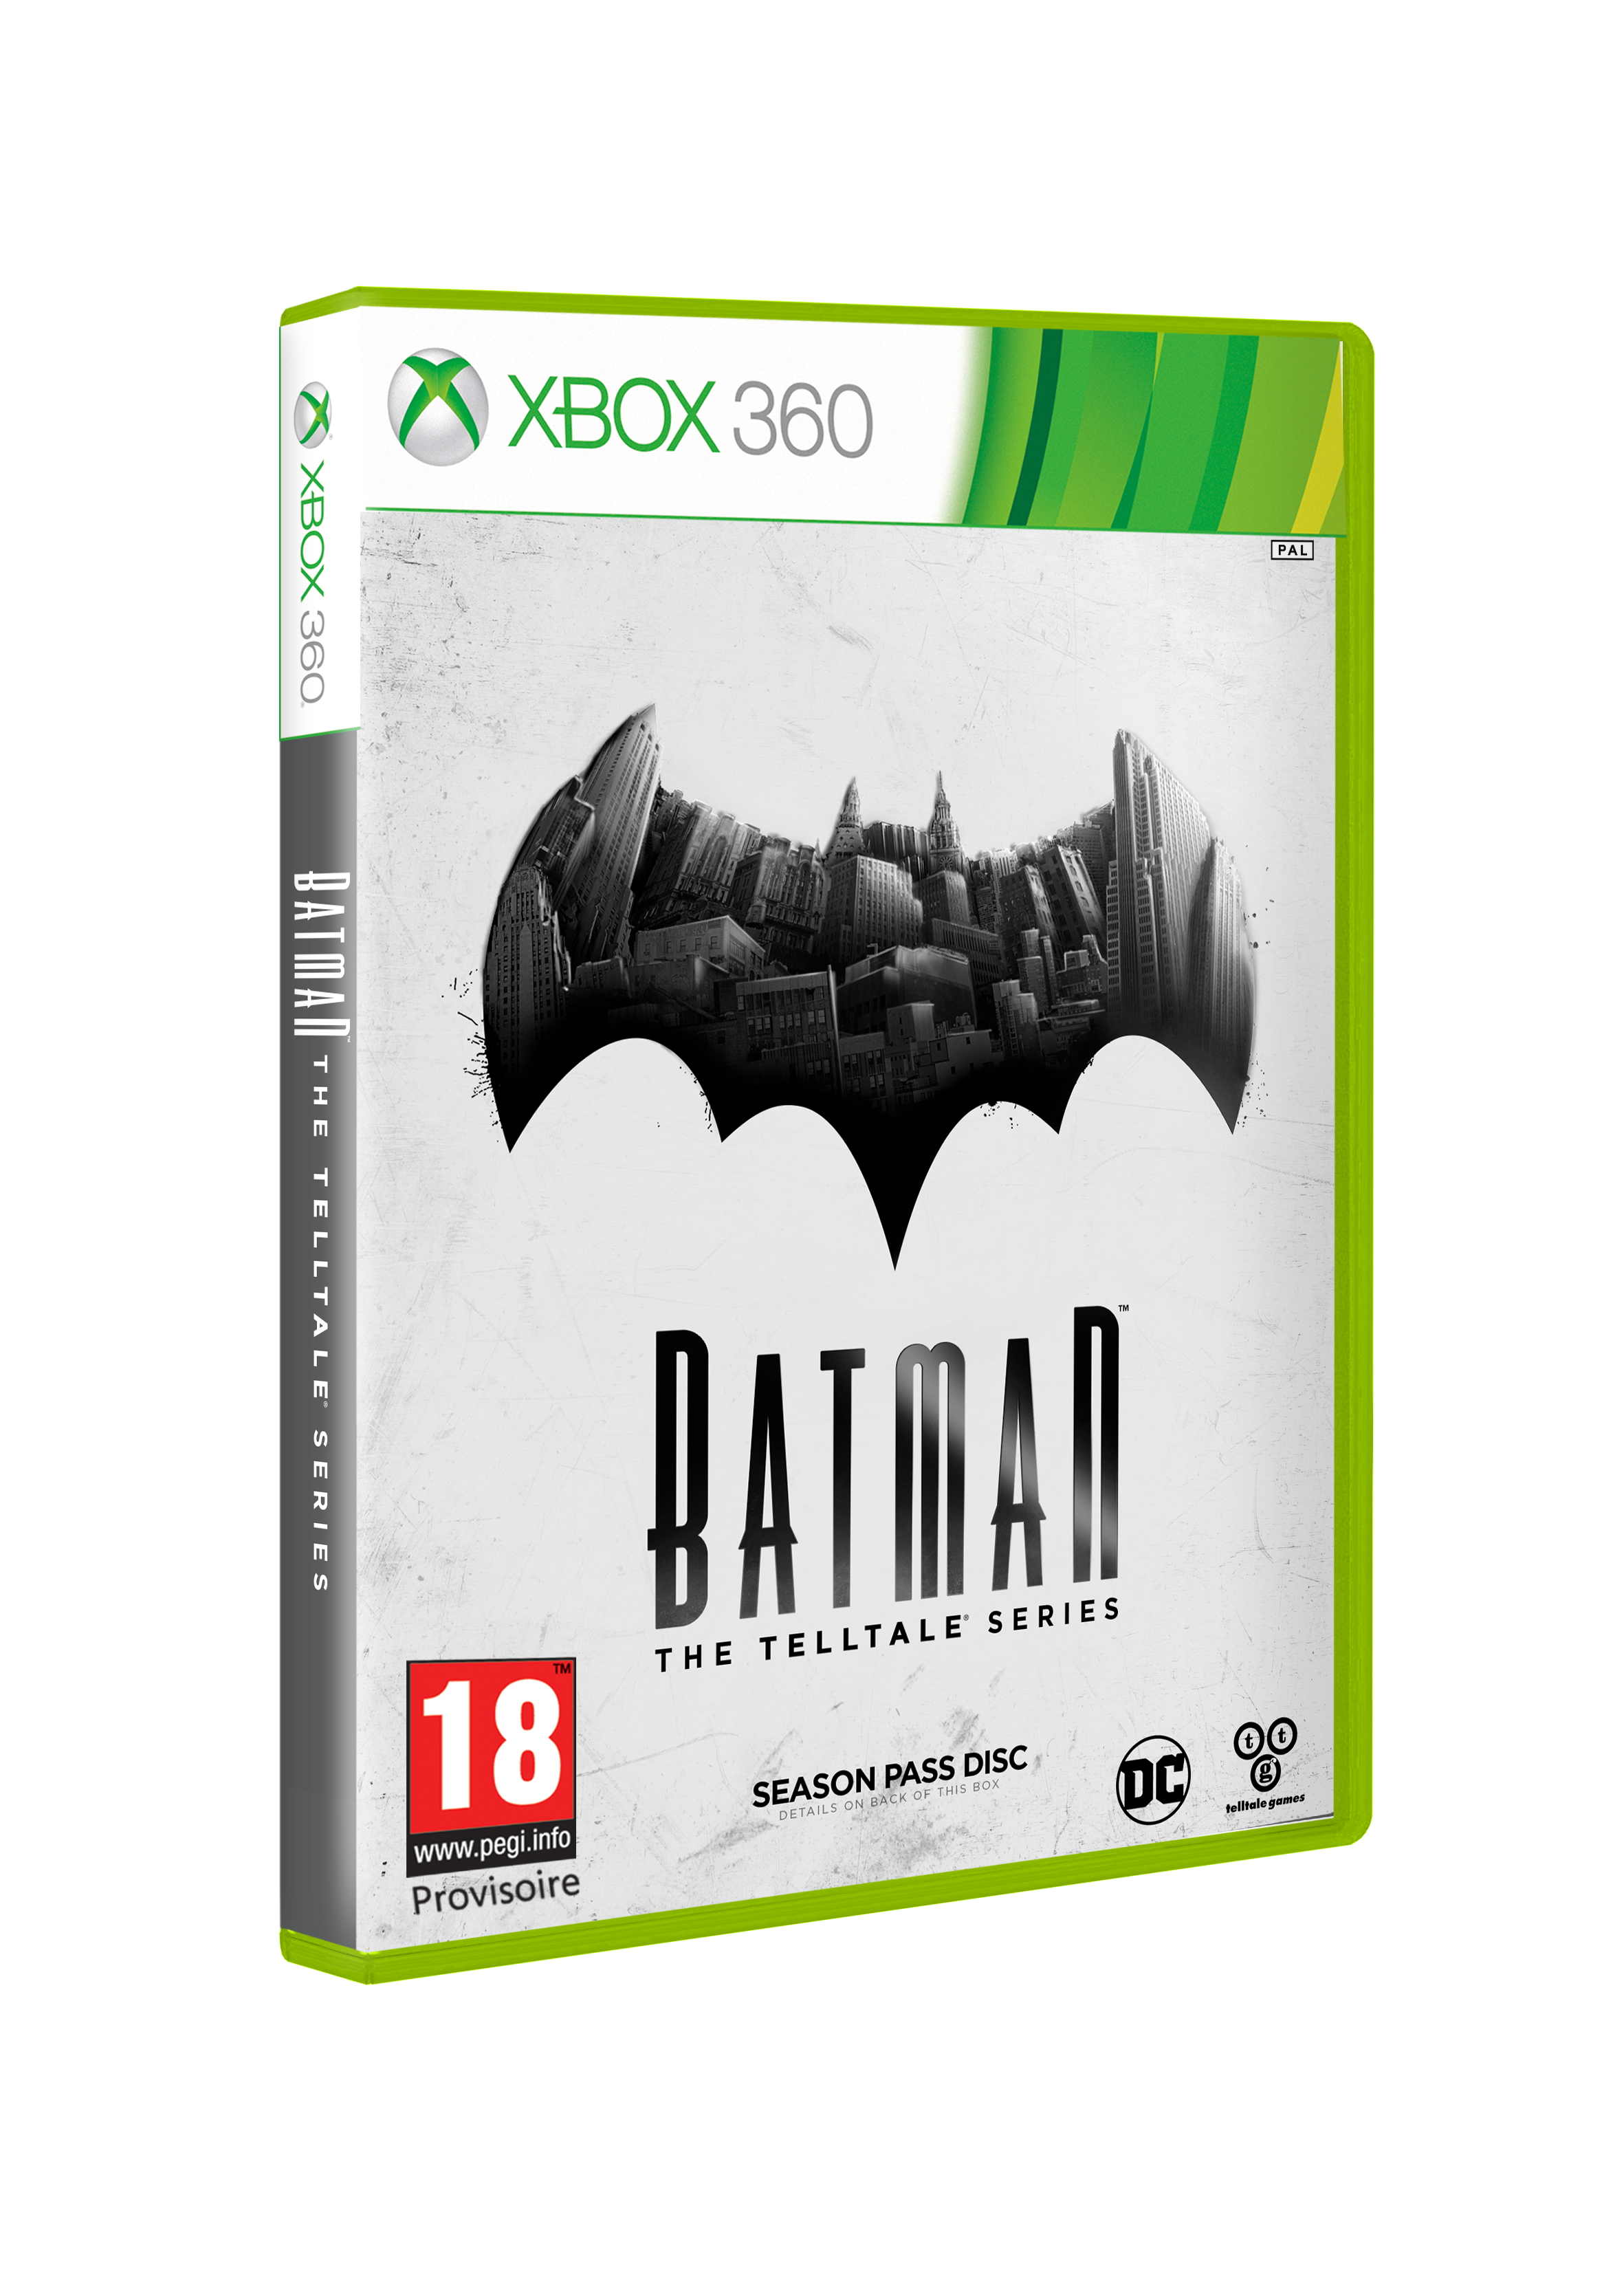 download batman the telltale series full game